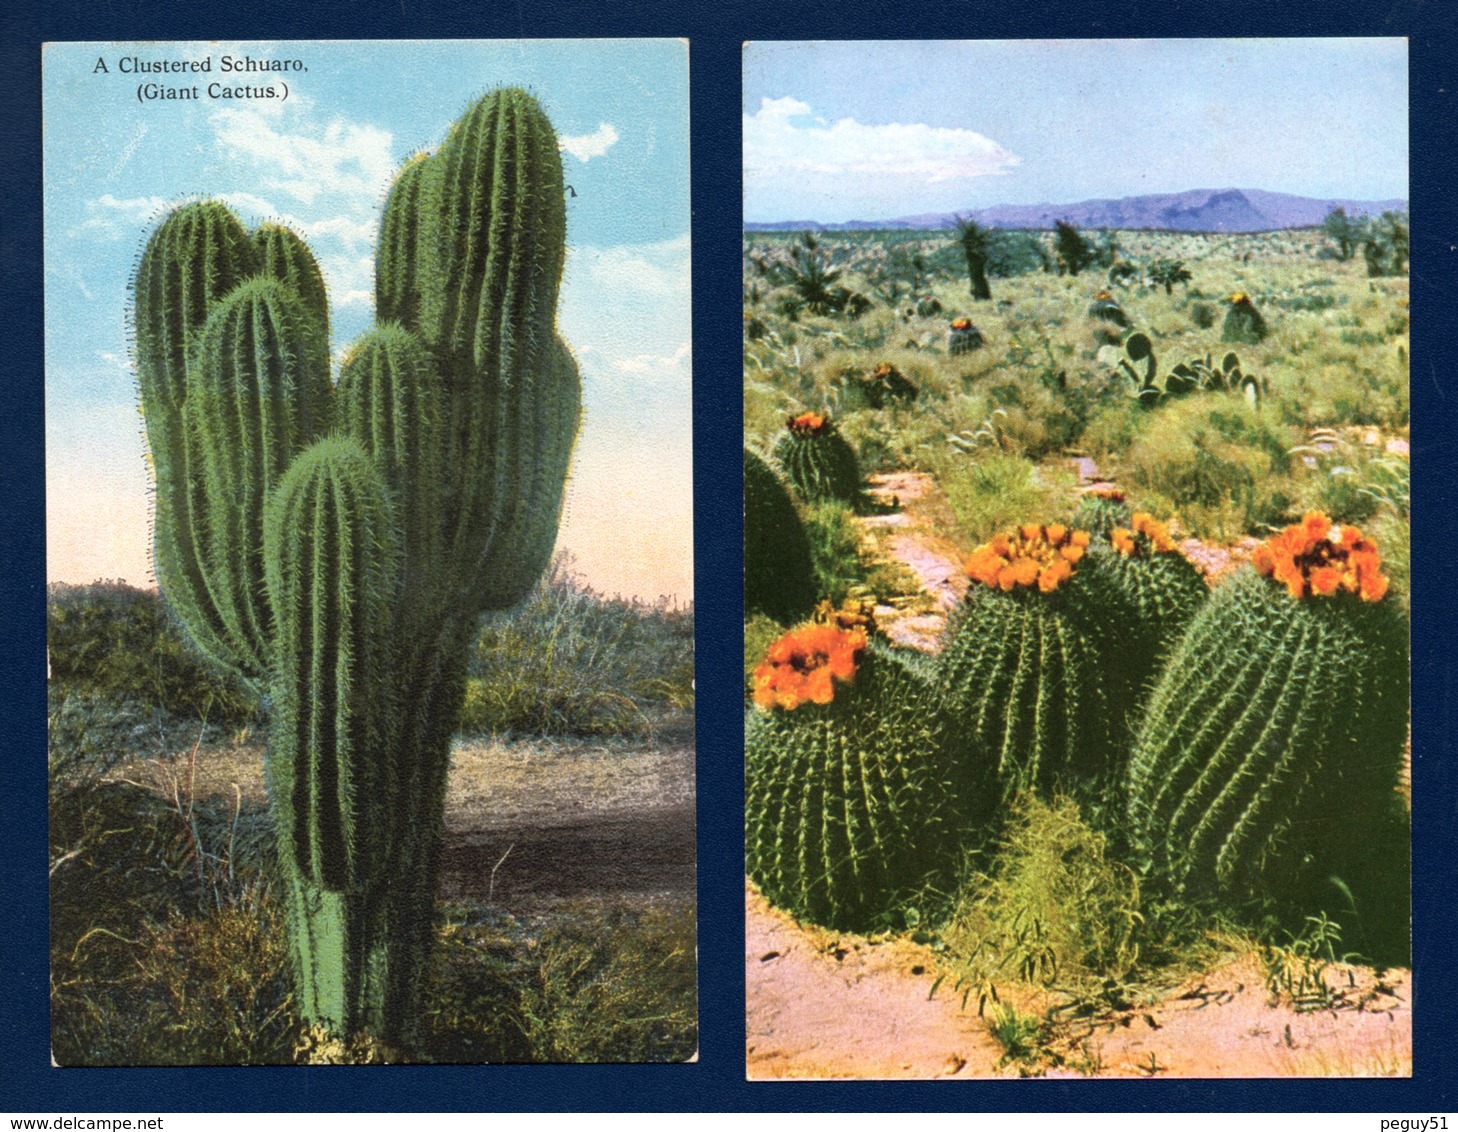 Cactus. Différentes espèces. Lot de 10 cartes. Voir descriptions